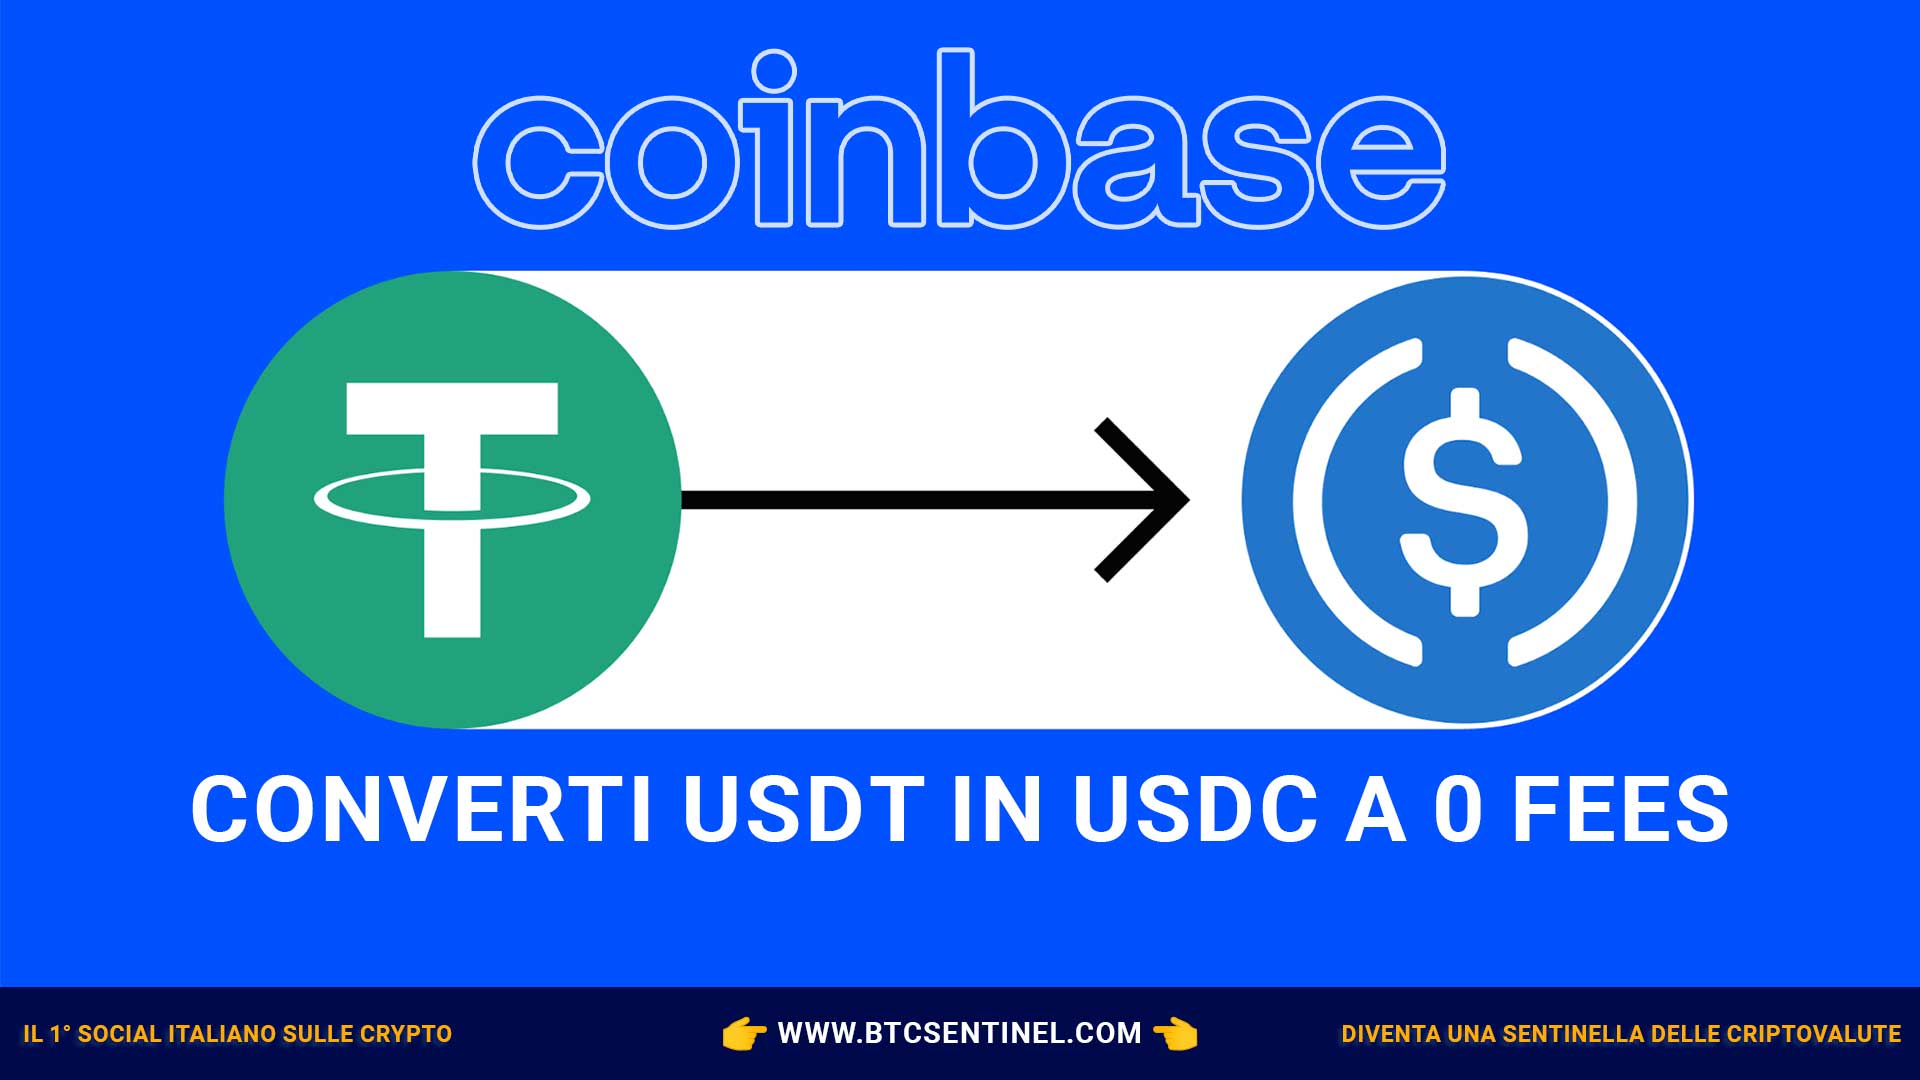 Coinbase annuncia sul suo blog che è ora possibile convertire USDT in USDC a zero fees